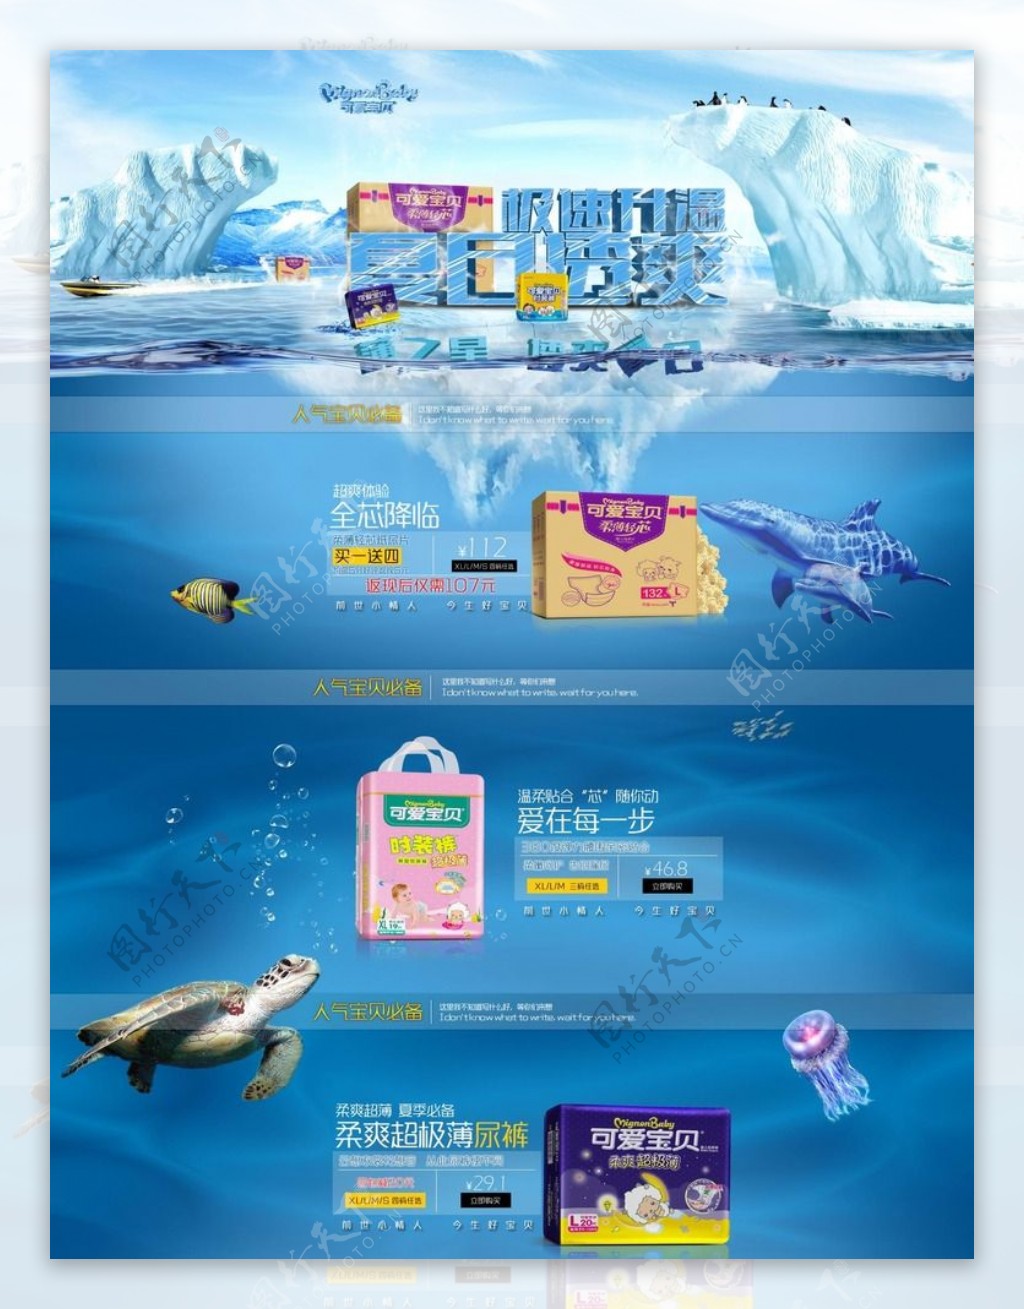 淘海底纸尿布创意广告页面PSD